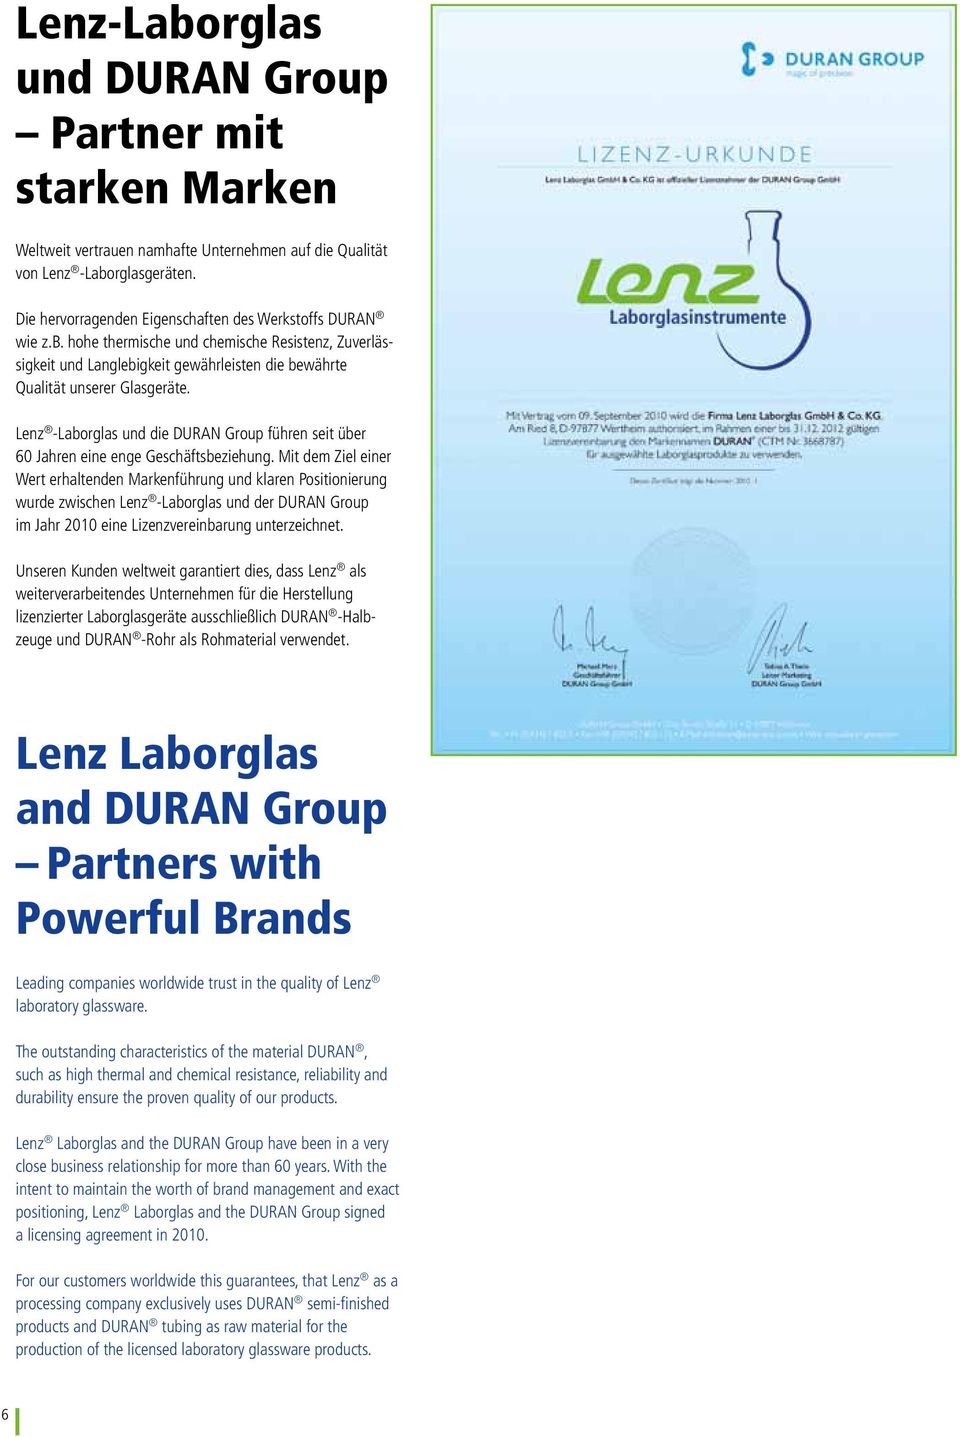 Lenz -Laborglas und die DURAN Group führen seit über 60 Jahren eine enge Geschäftsbeziehung.